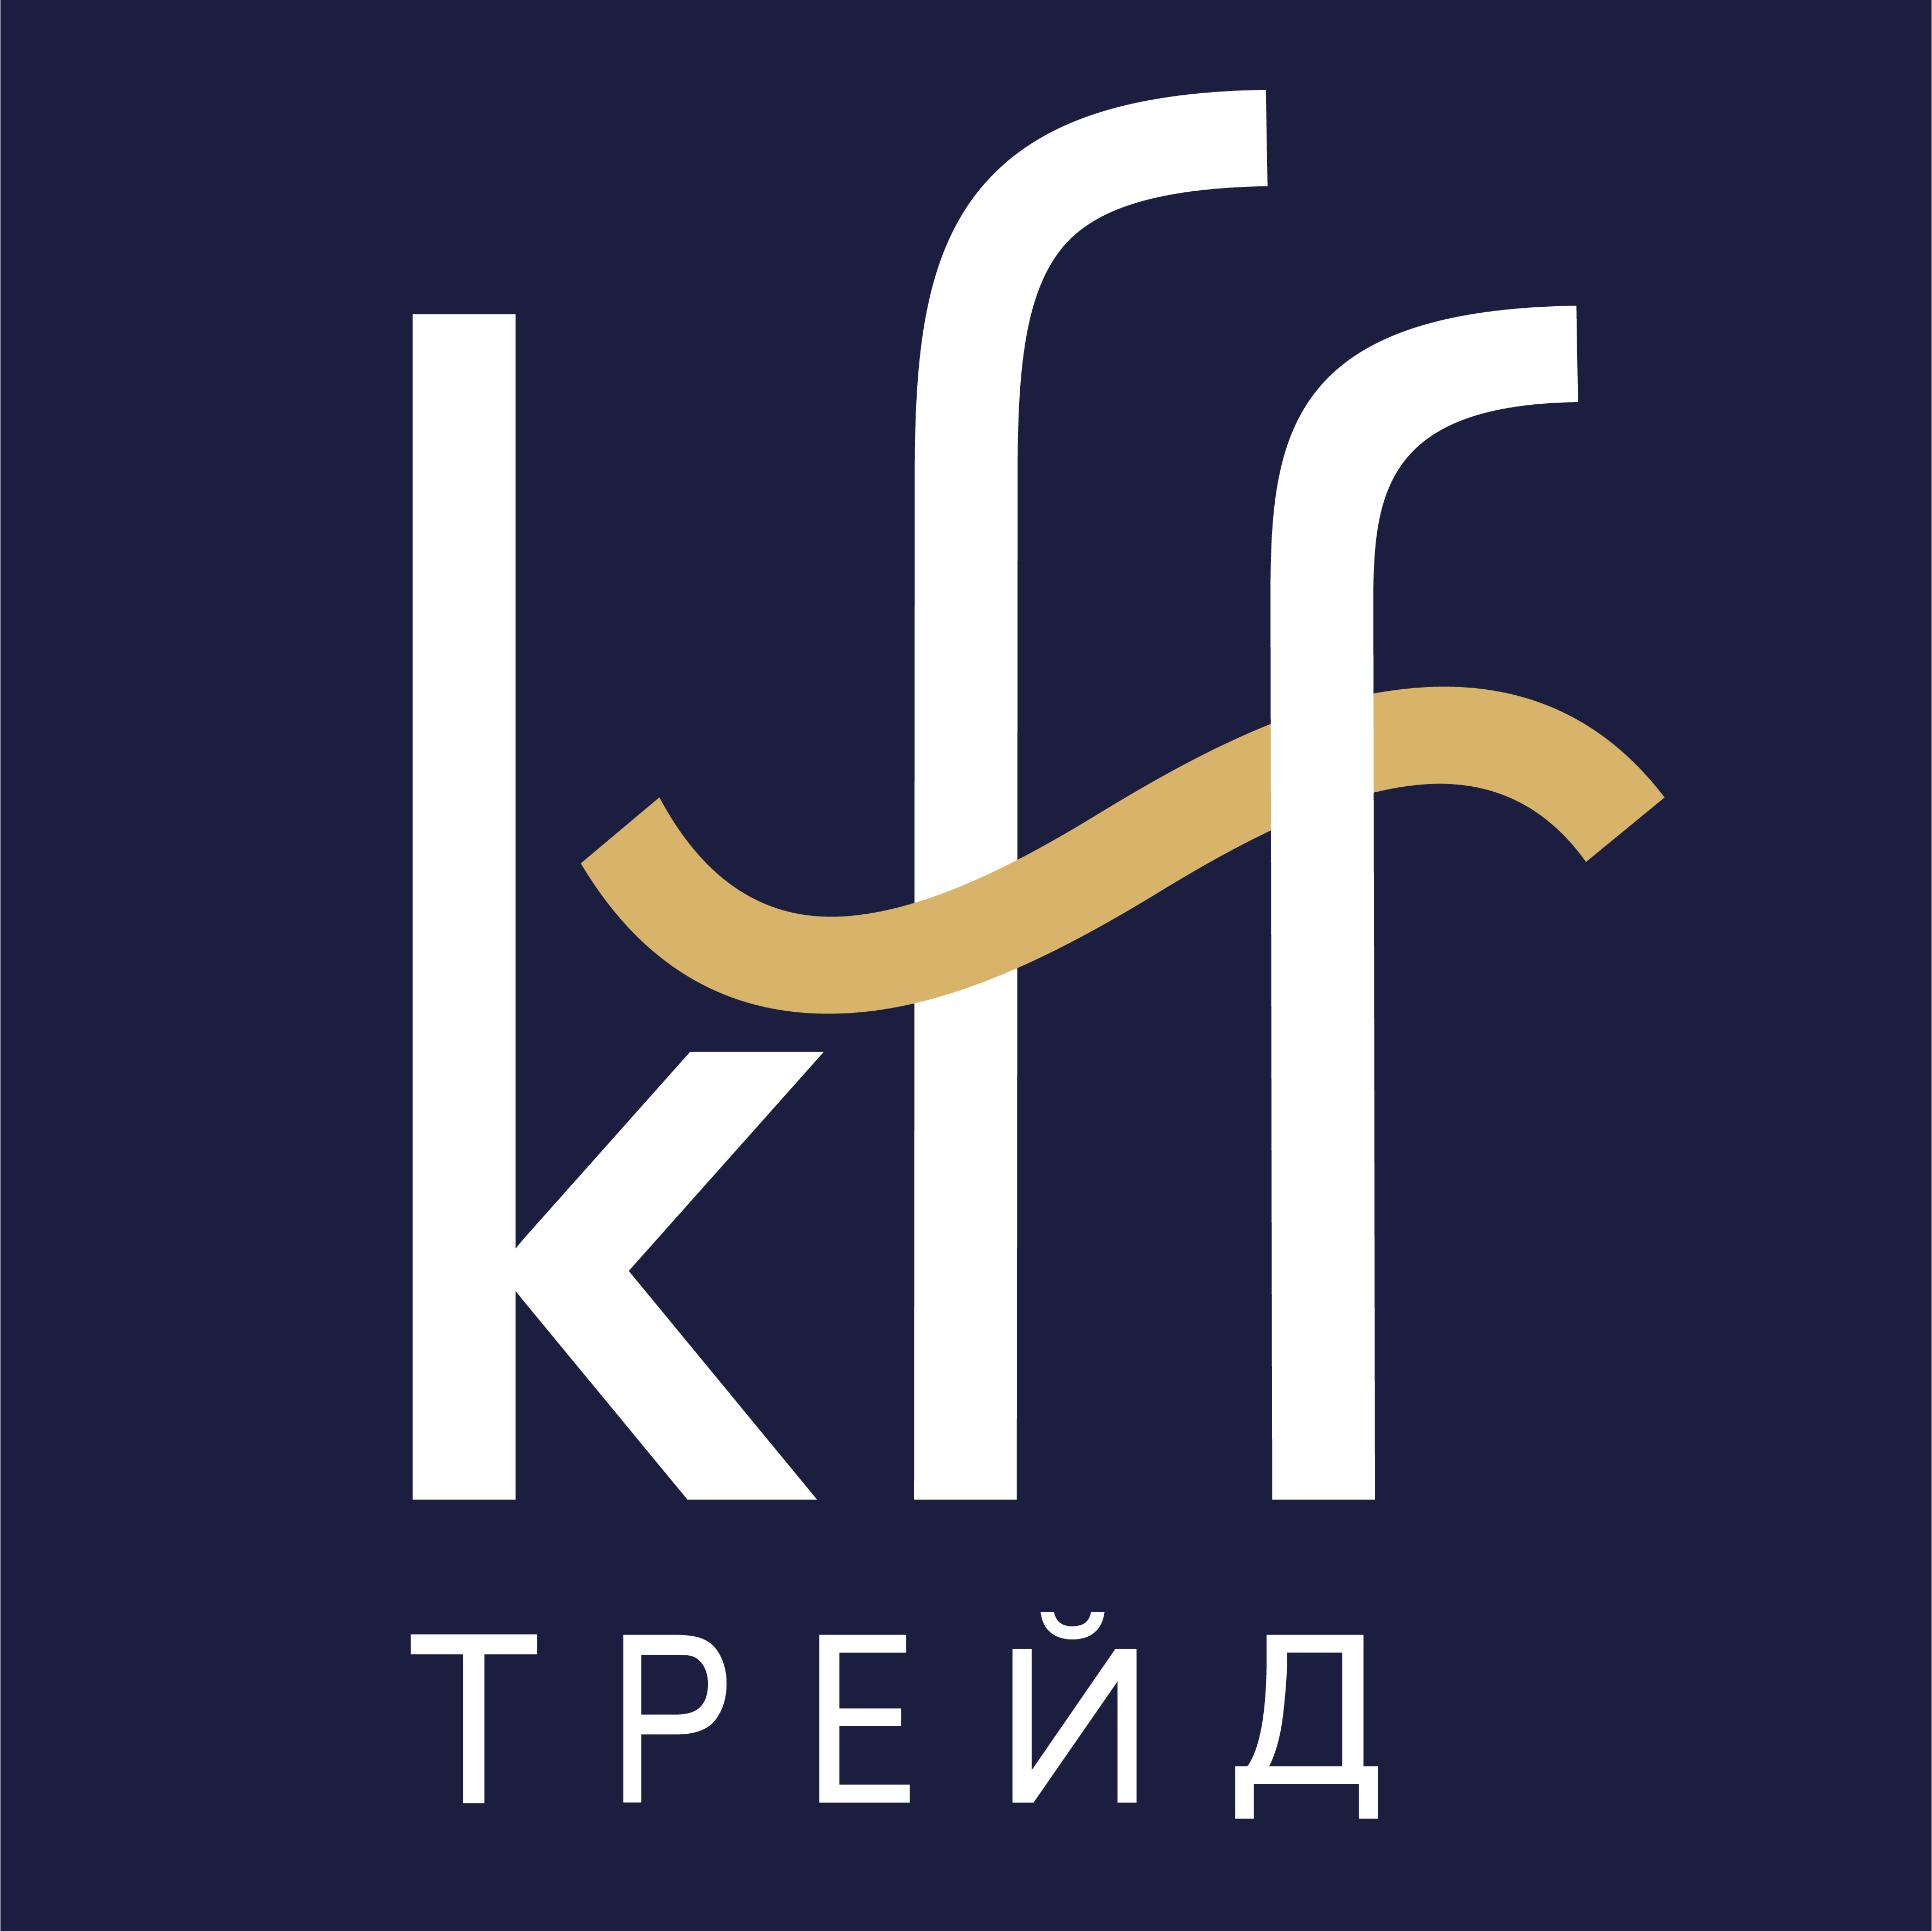 КФФ лого 2021 с золотой полосой